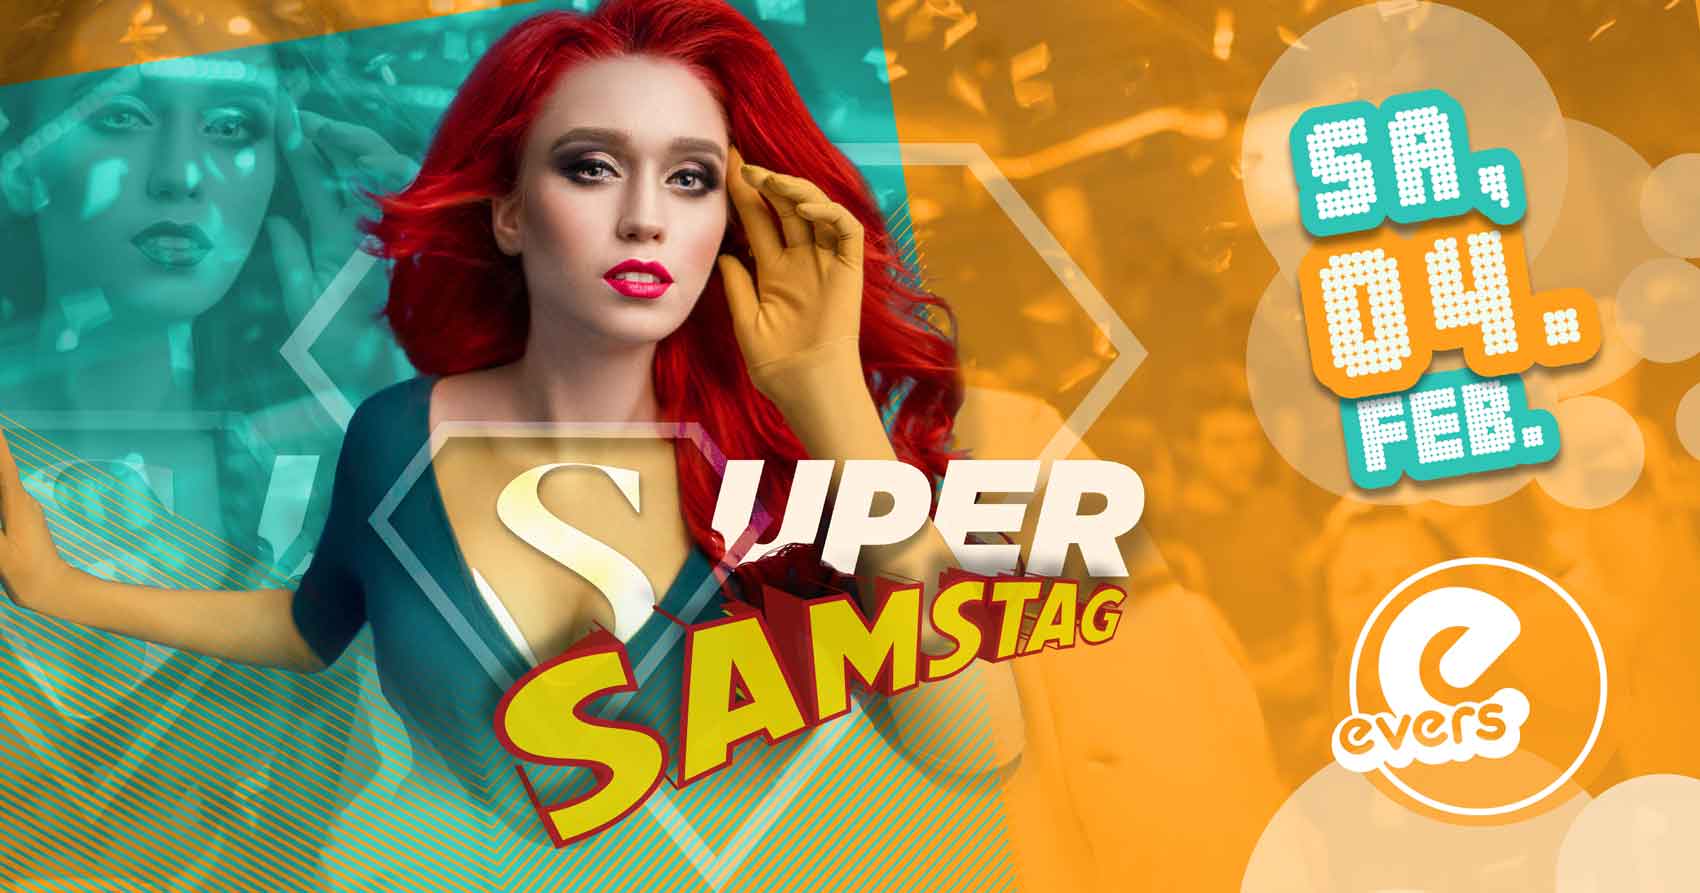 SUPER SAMSTAG – dein Samstagserlebnis im evers | SA 04.02.